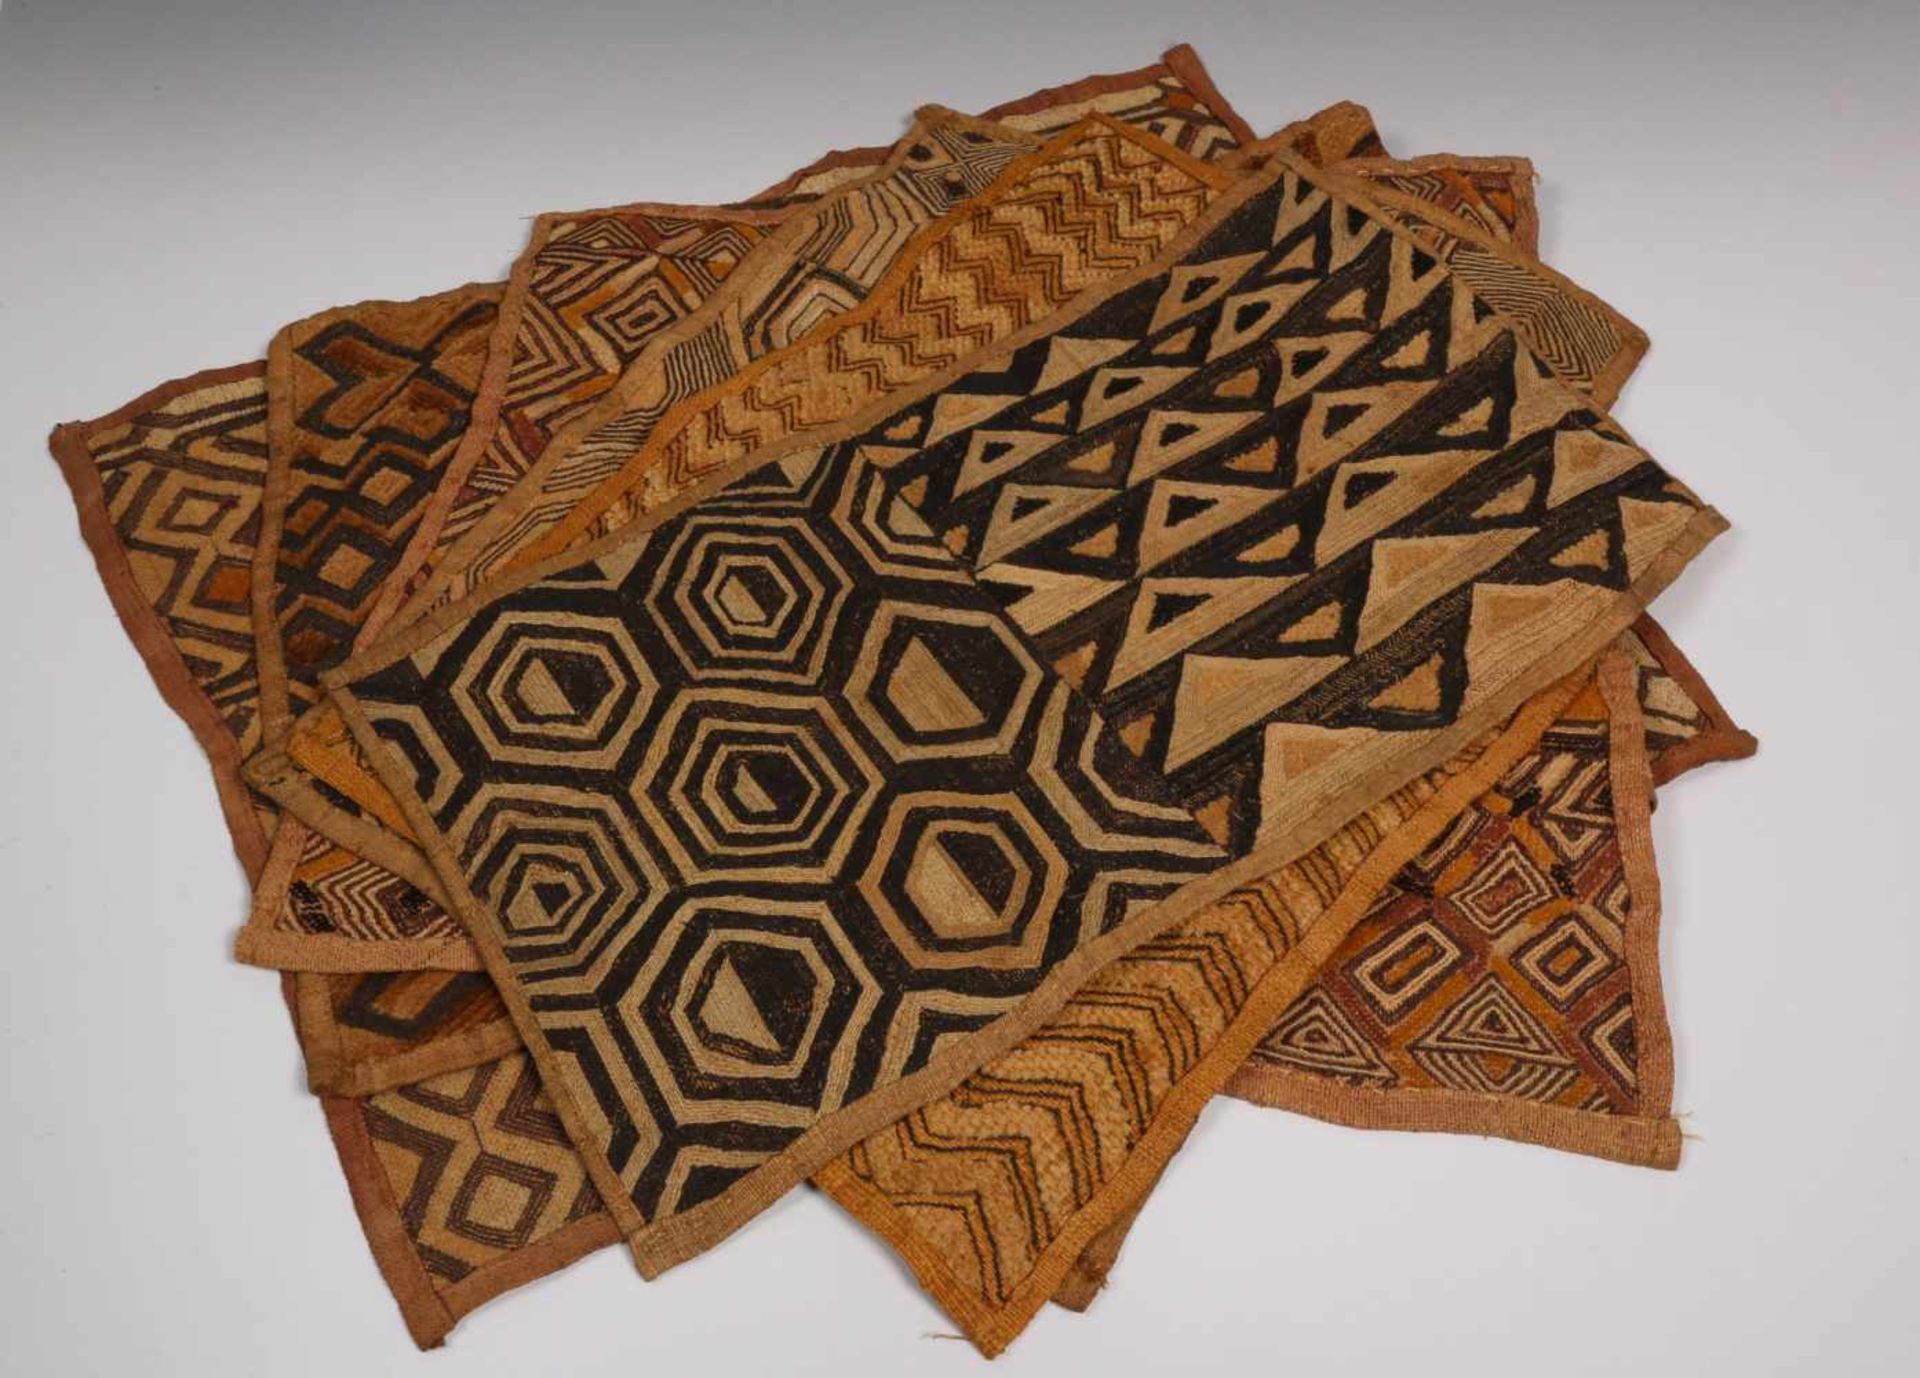 Lot met diverse etnische objecten;o.a. Kuba doekjes, Oost Afrika kraalwerk en Chili, twee textiel